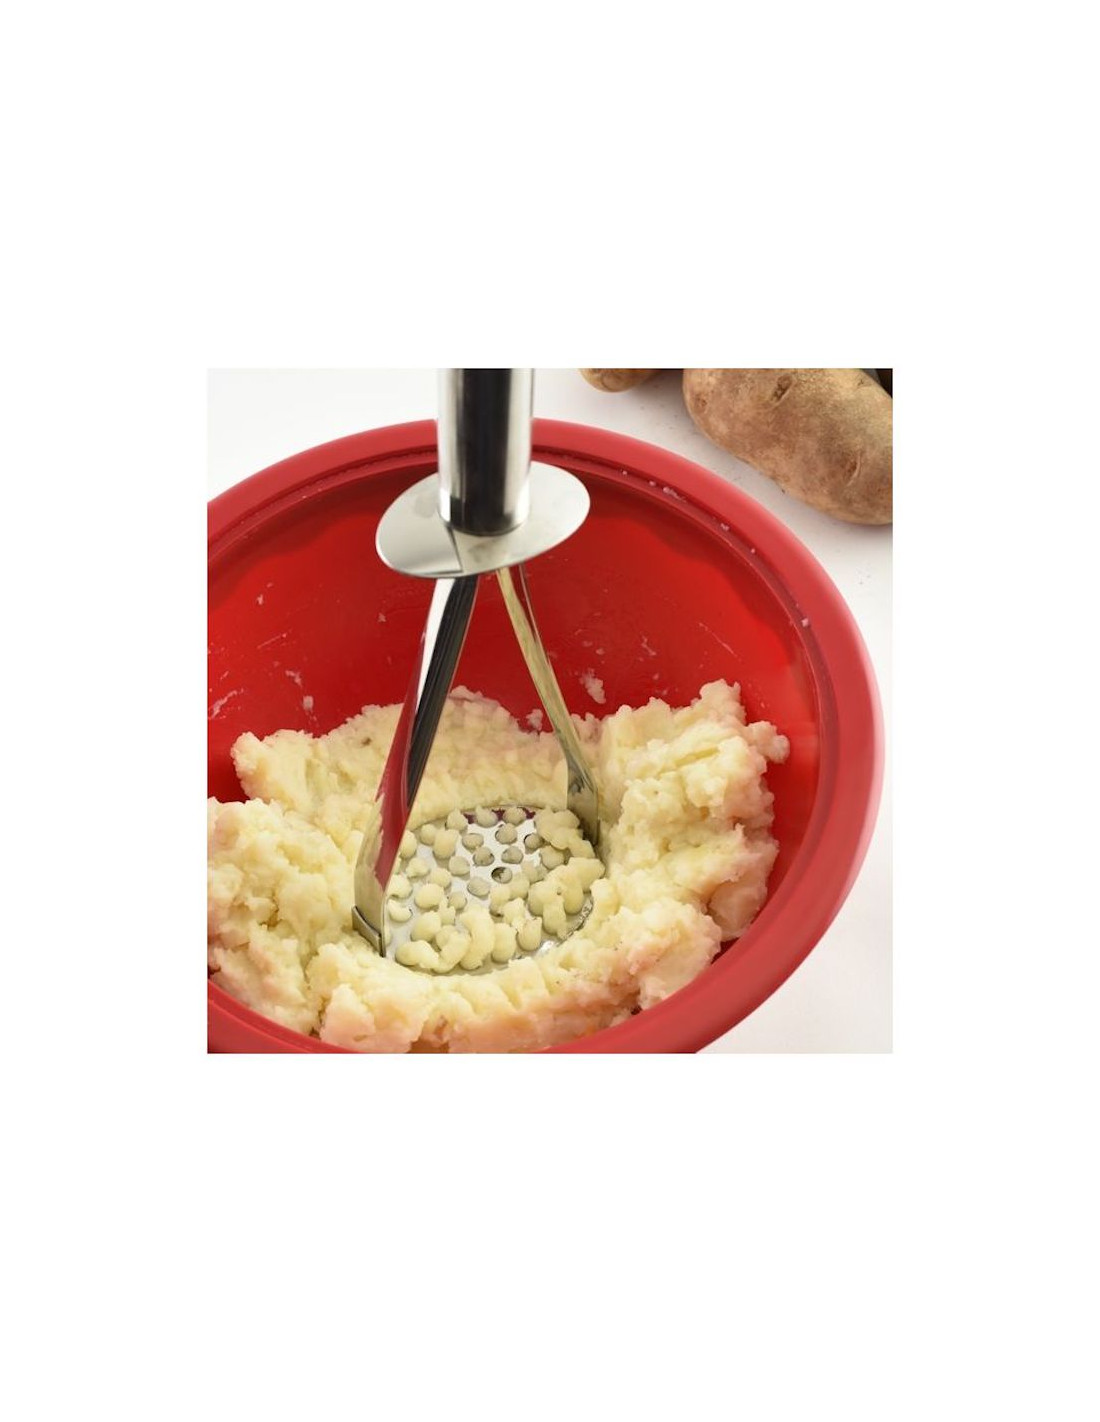 Machacador de papas y frijoles hecho de acero inoxidable (30 cm de largo)  Diseño vanguardista ligero y resistente, con orificios distribuidos para  triturar alimentos - Mango sólido para manipulación segura en cocina